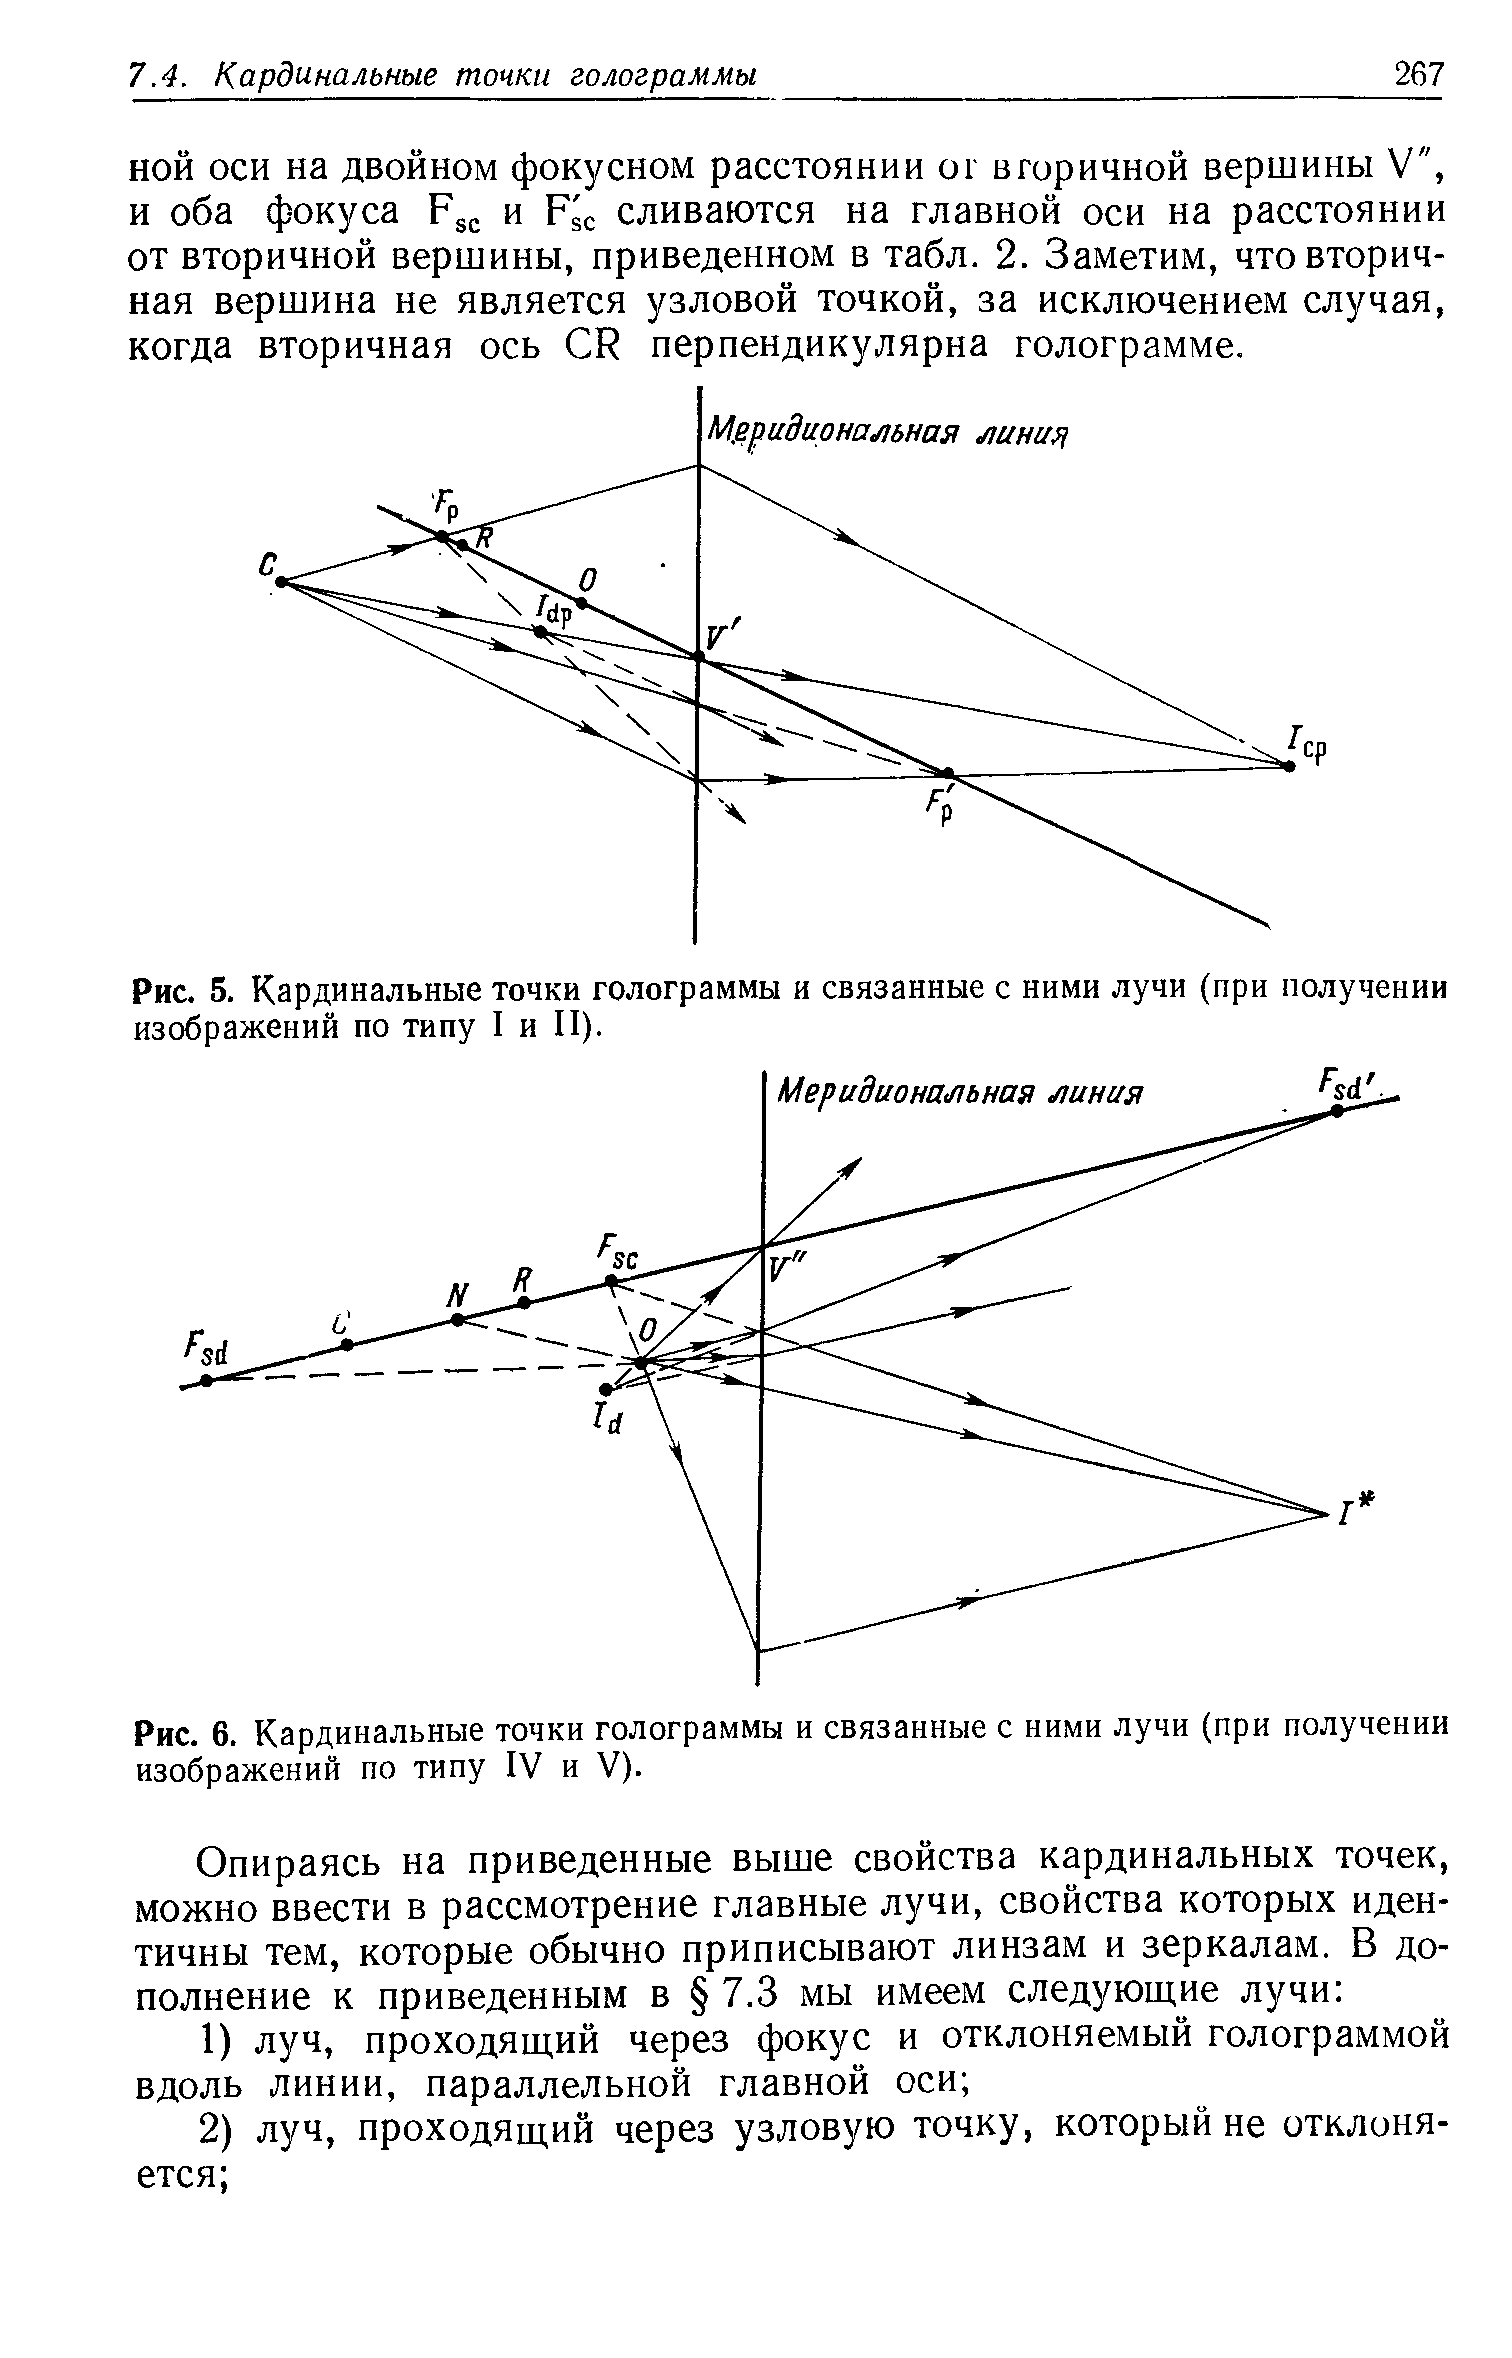 Рис. 5. Кардинальные точки голограммы и связанные с ними лучи (при получении изображений по типу I и II).
